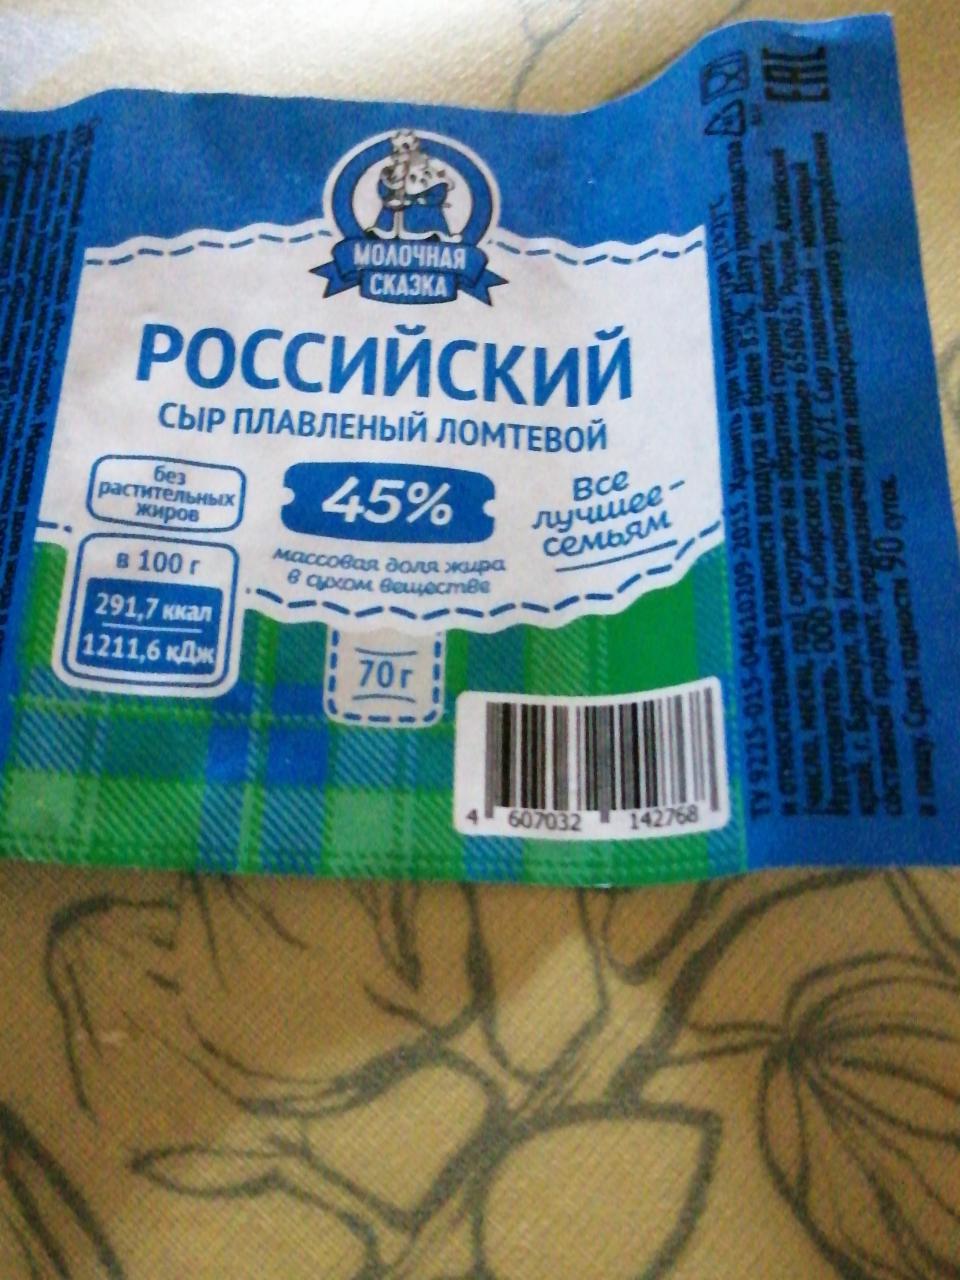 Фото - Российский сыр плавленый ломтевой Молочная Сказка